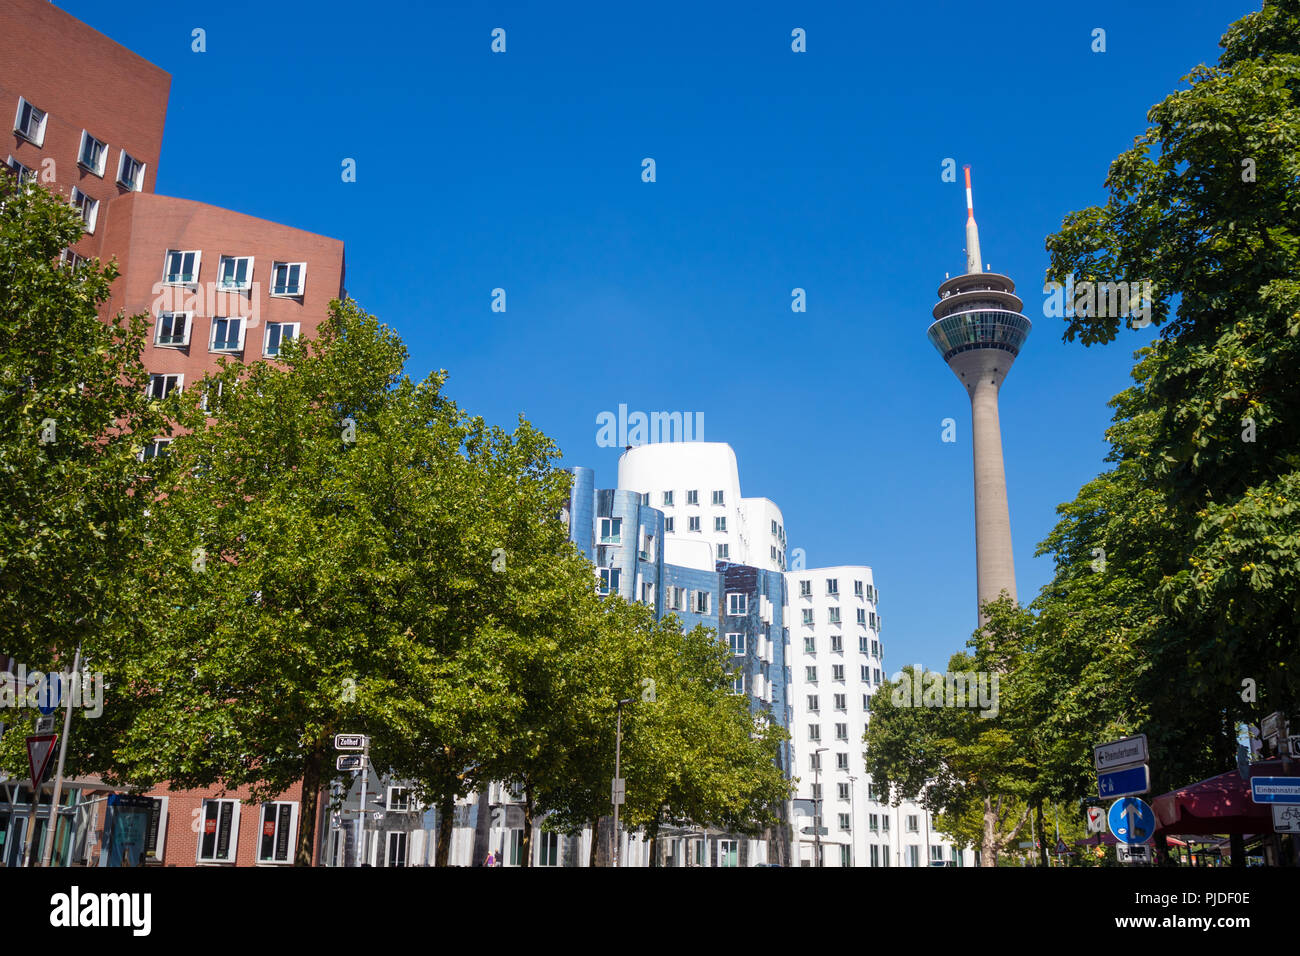 Die Gehry-bauten und der Rheinturm Turm in Düsseldorf Deutschland. Stockfoto